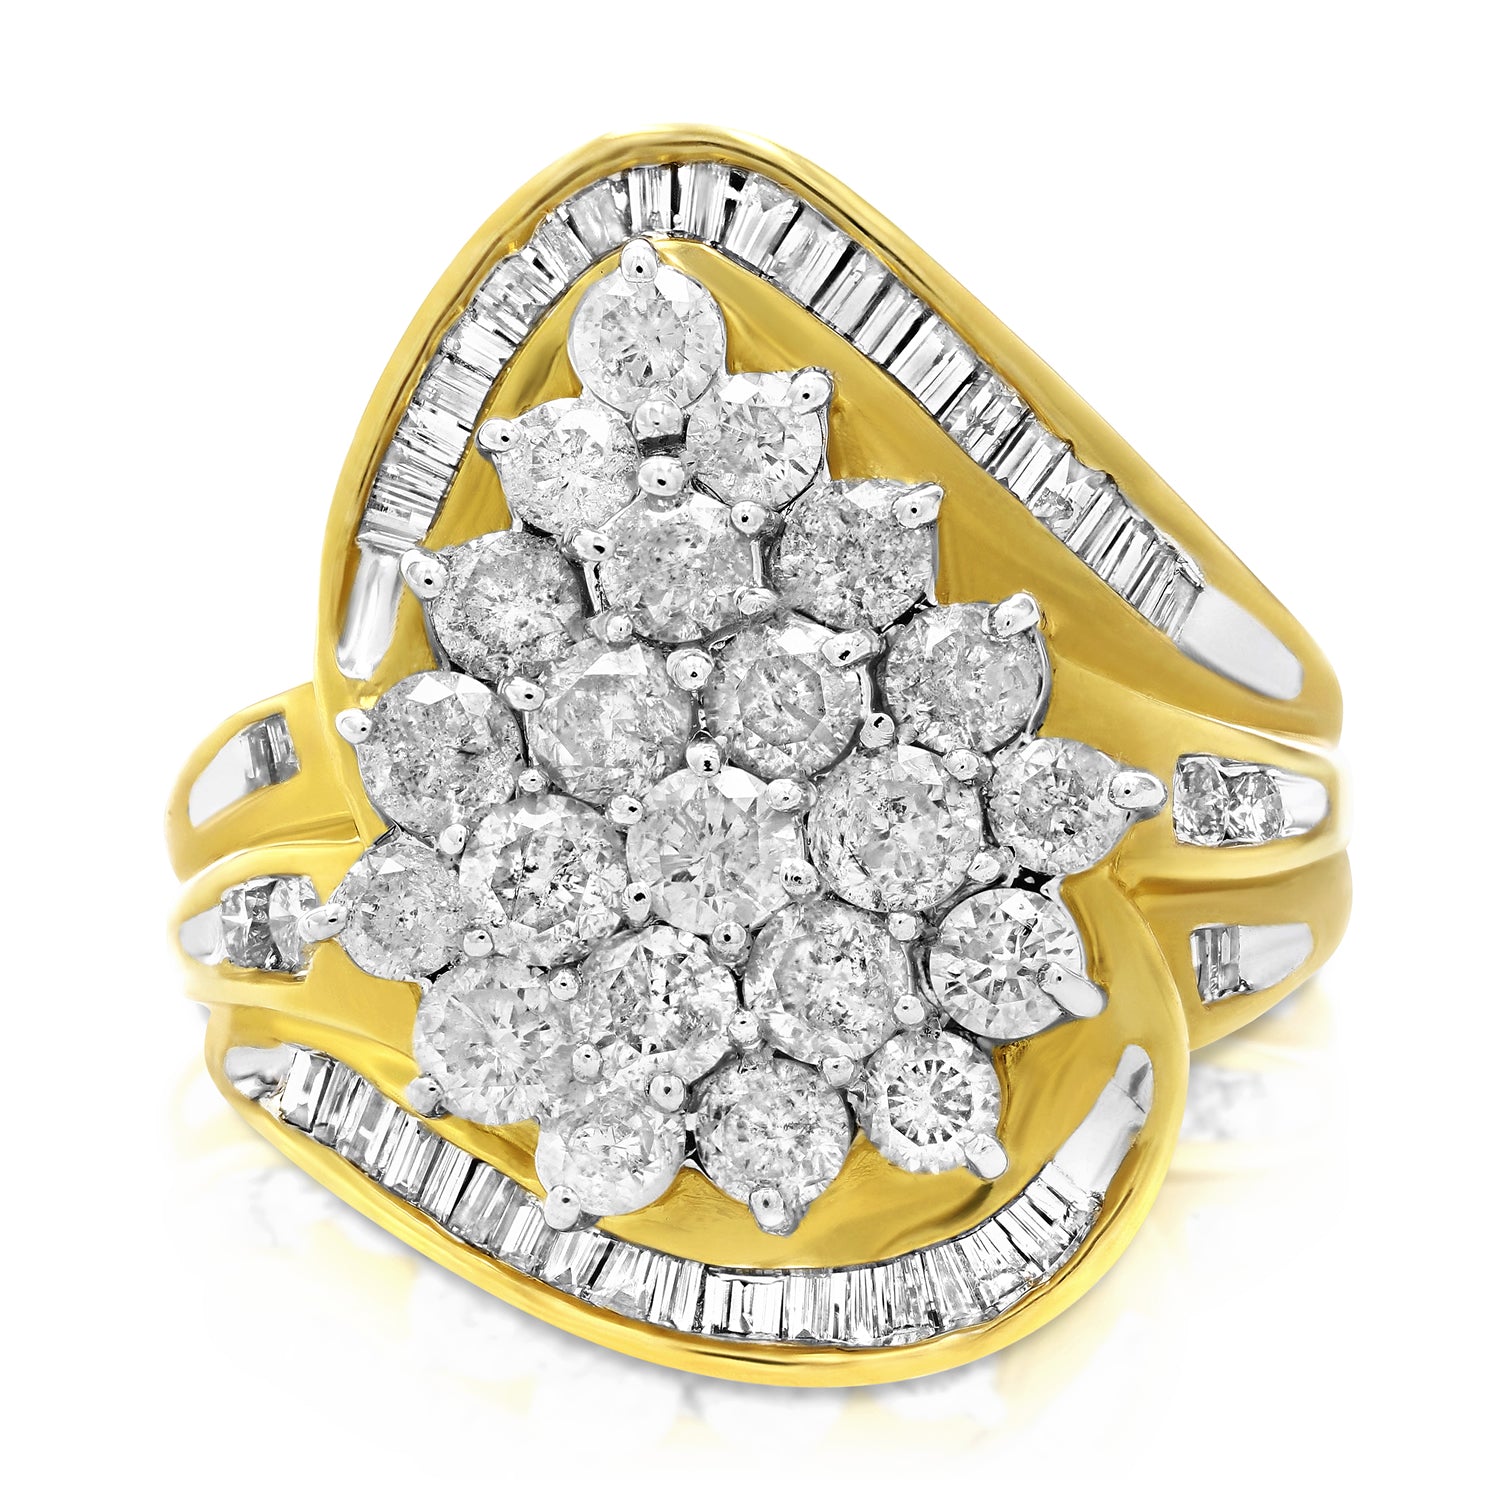 Diamond fashion ring | Diamond fashion rings, Fashion rings, Diamond fashion